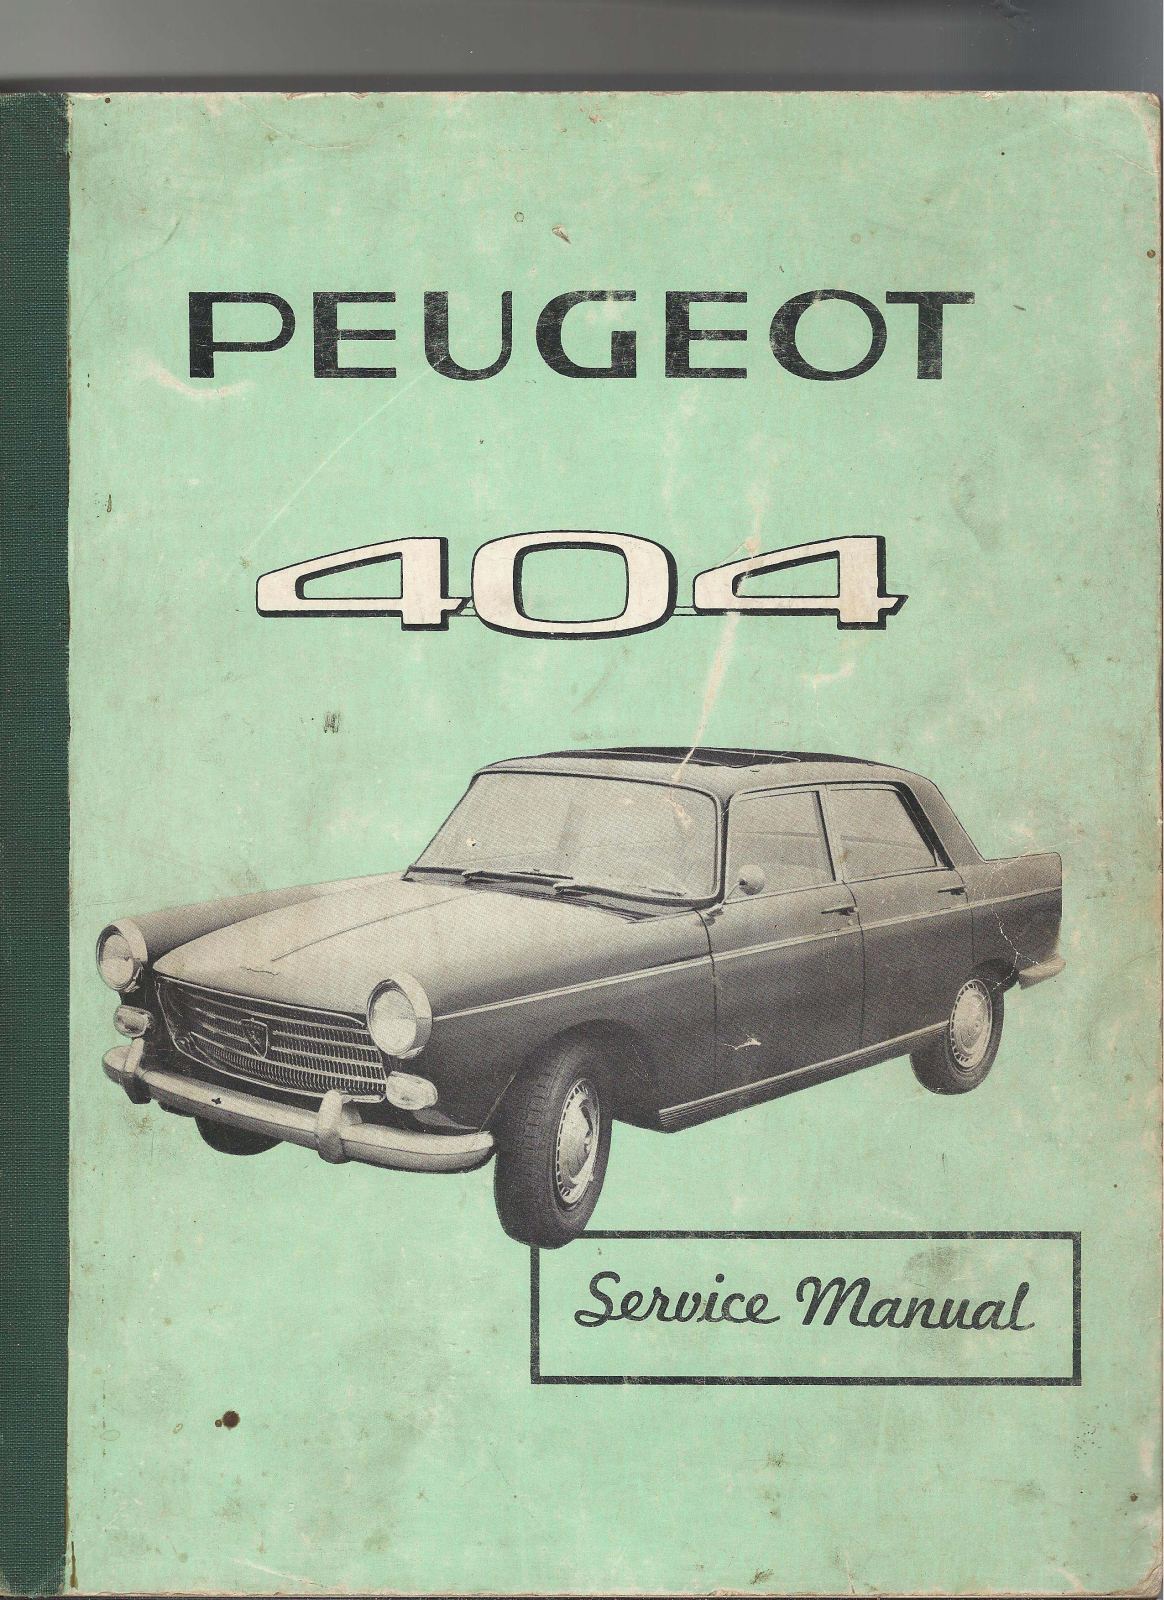 Peugeot 404 1962 User Manual